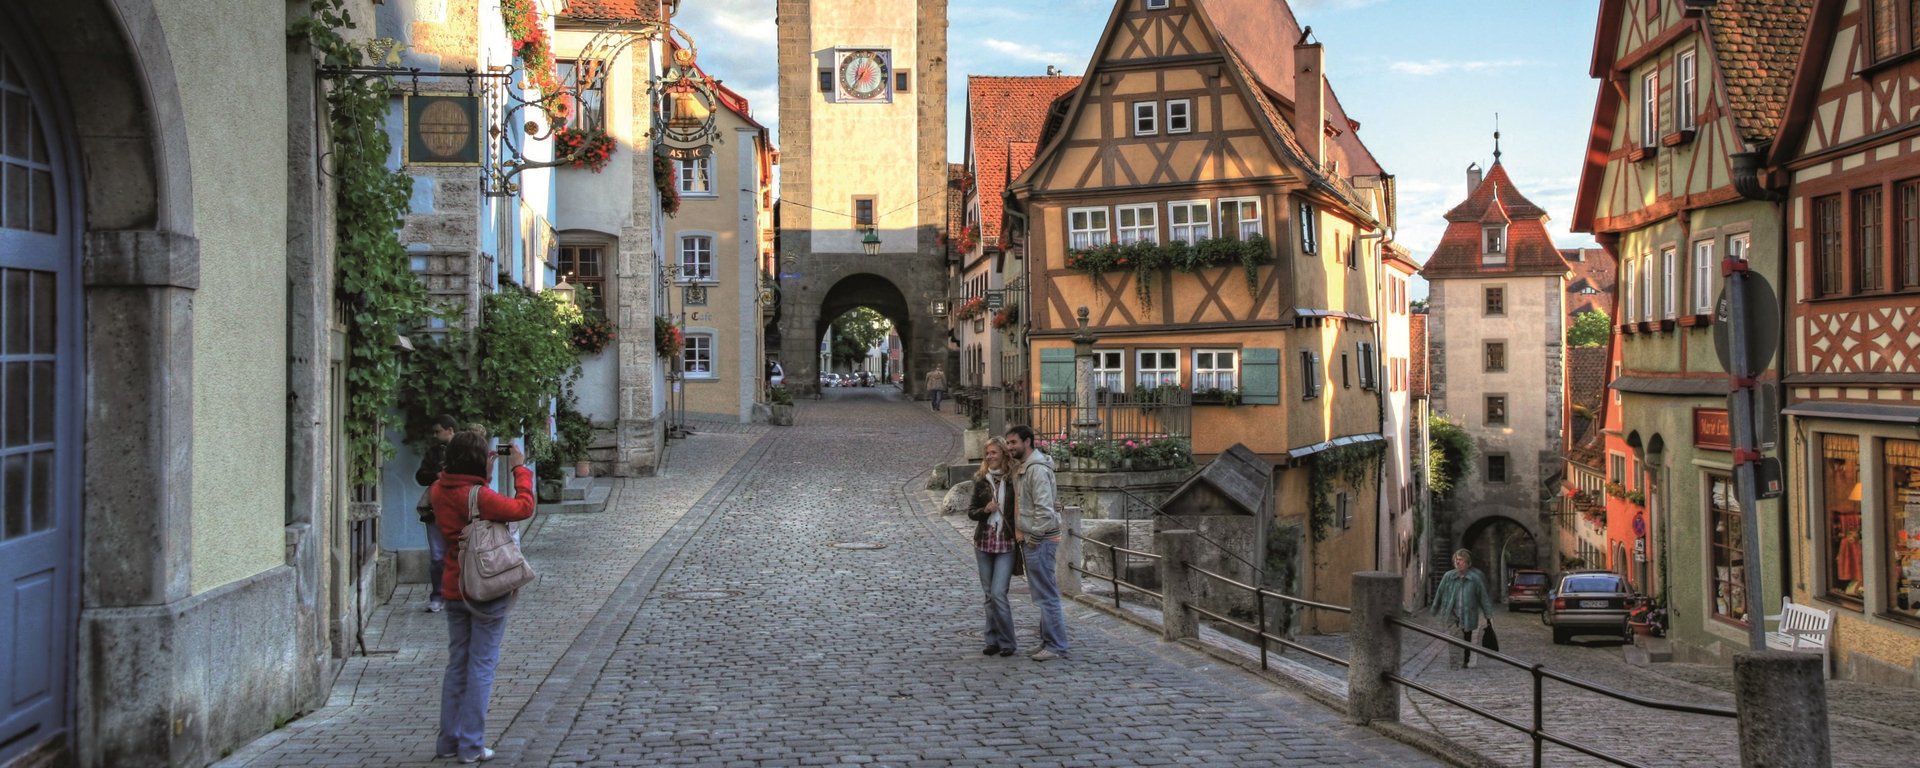 Rothenburg ob der Tauber im Romantischen Franken